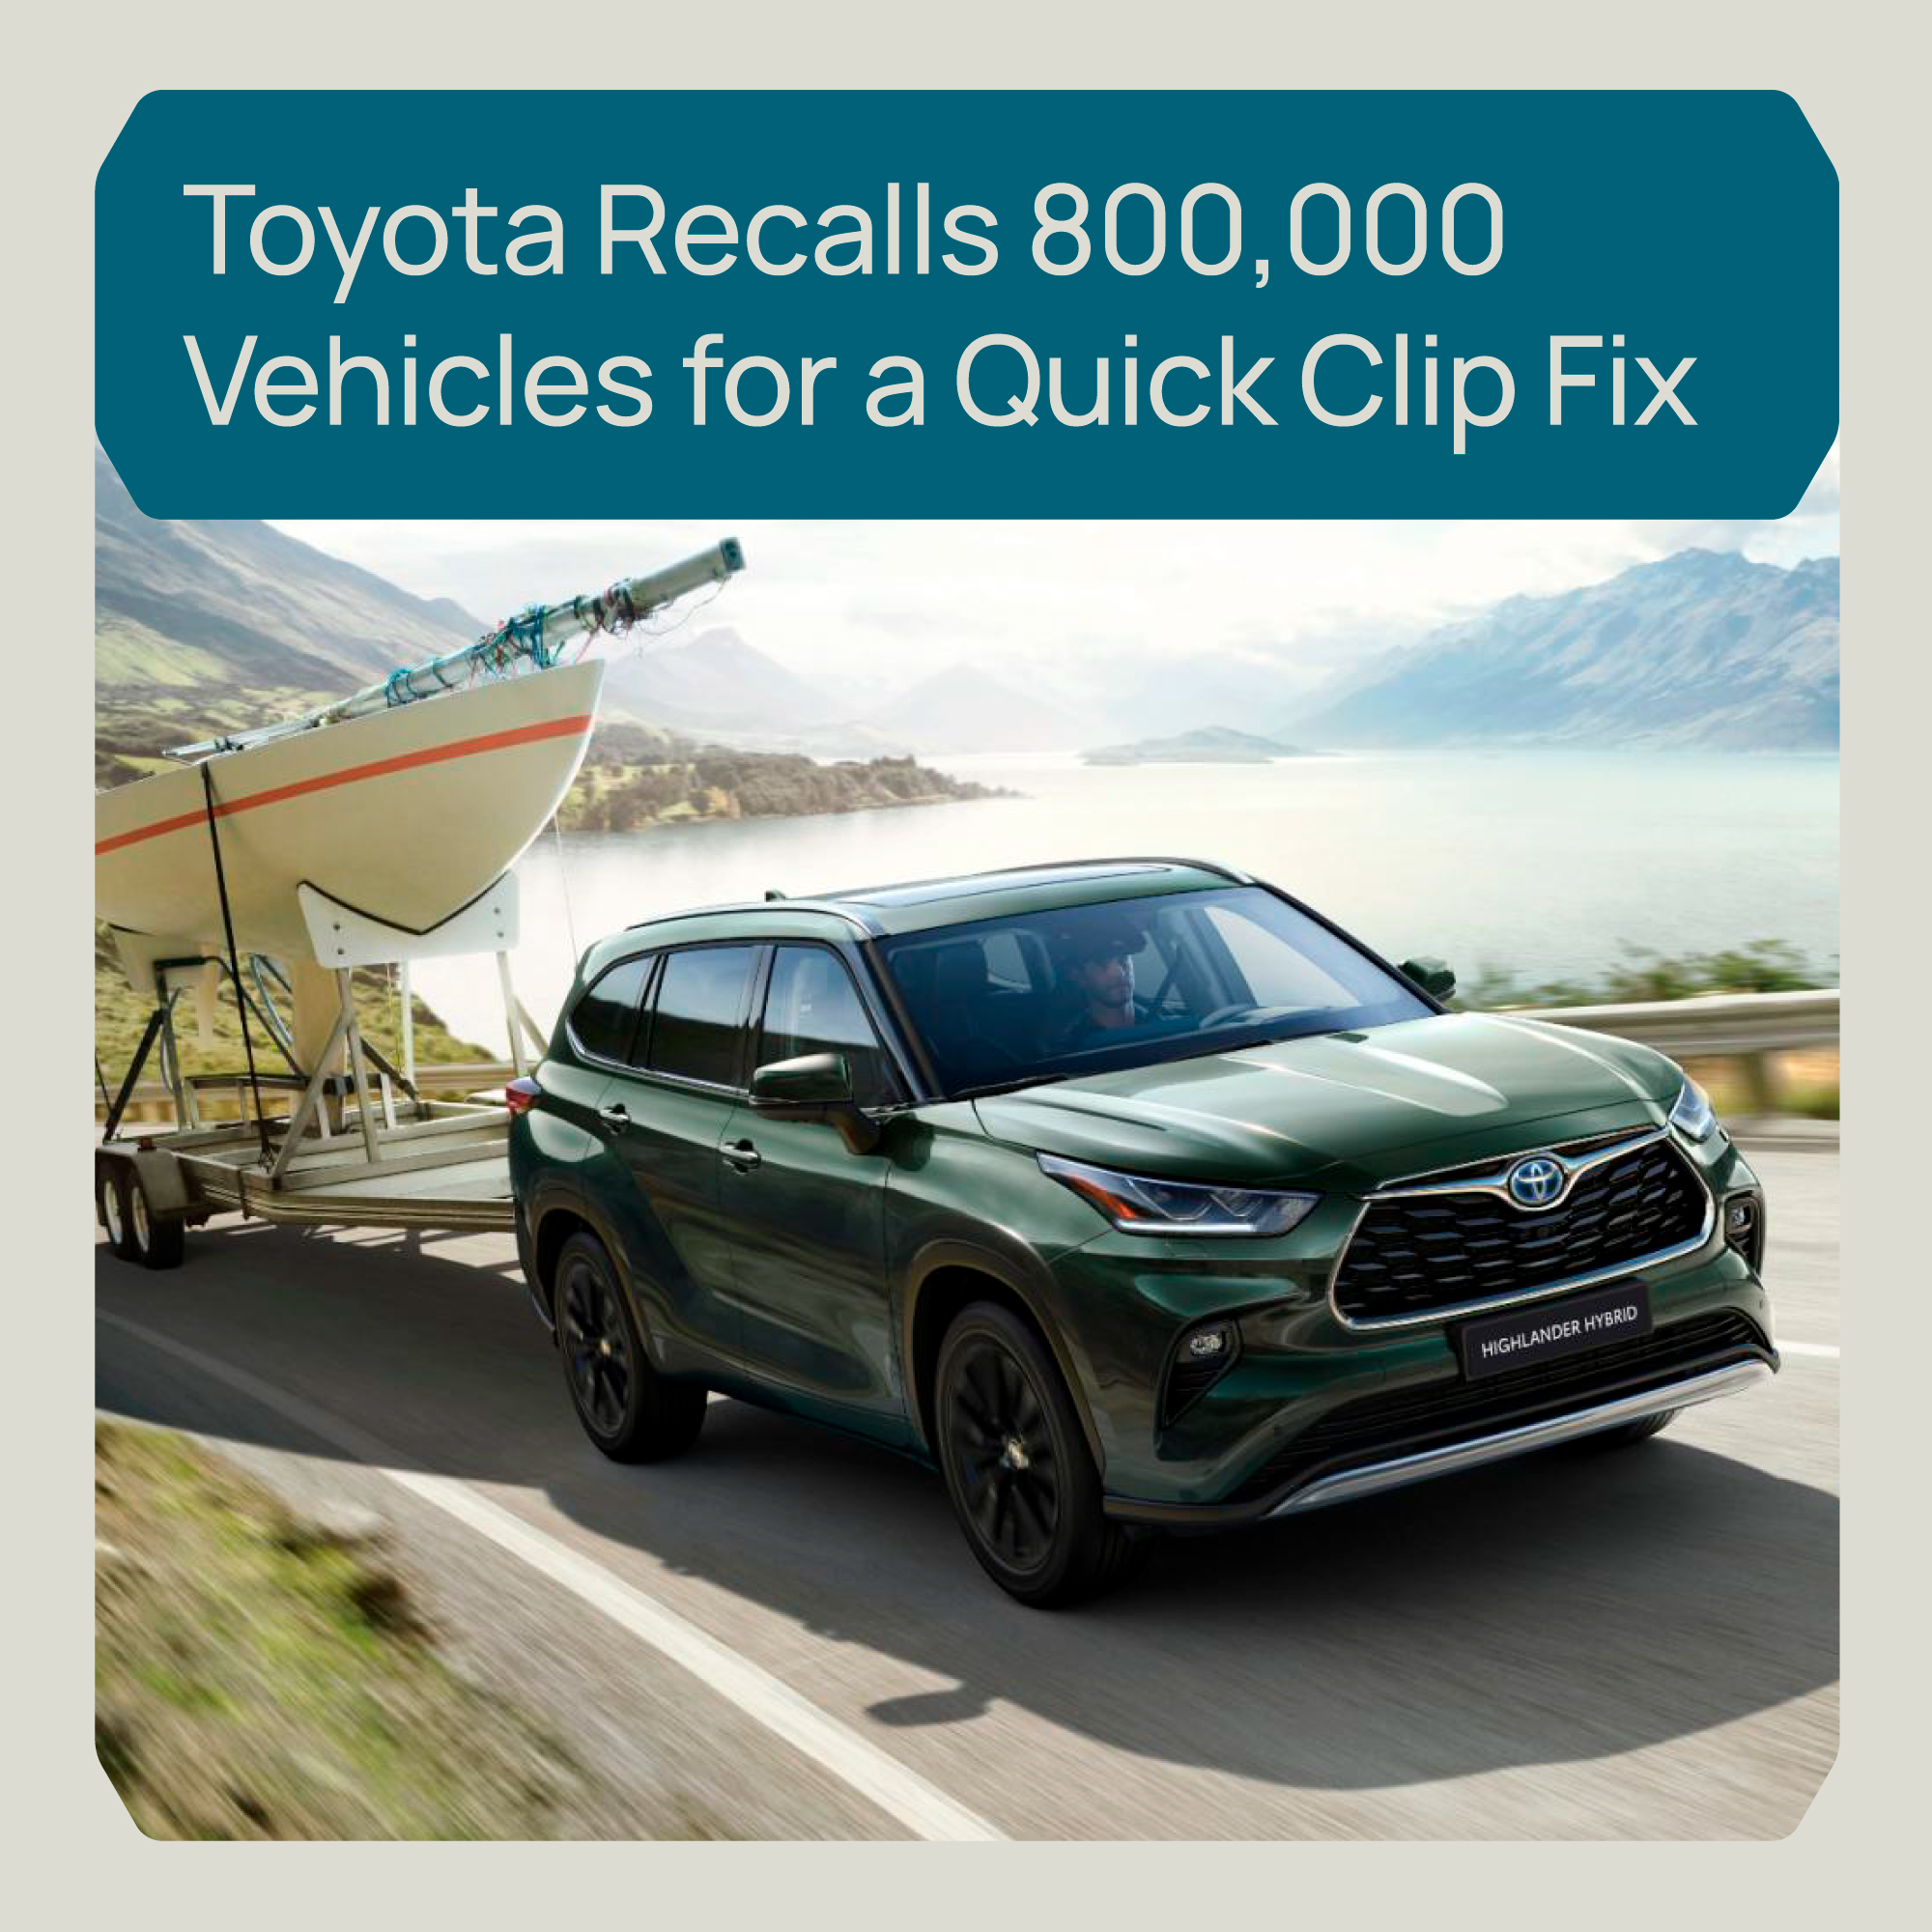 Toyota Recalls 800,000 Vehicles for a Quick Clip Fix